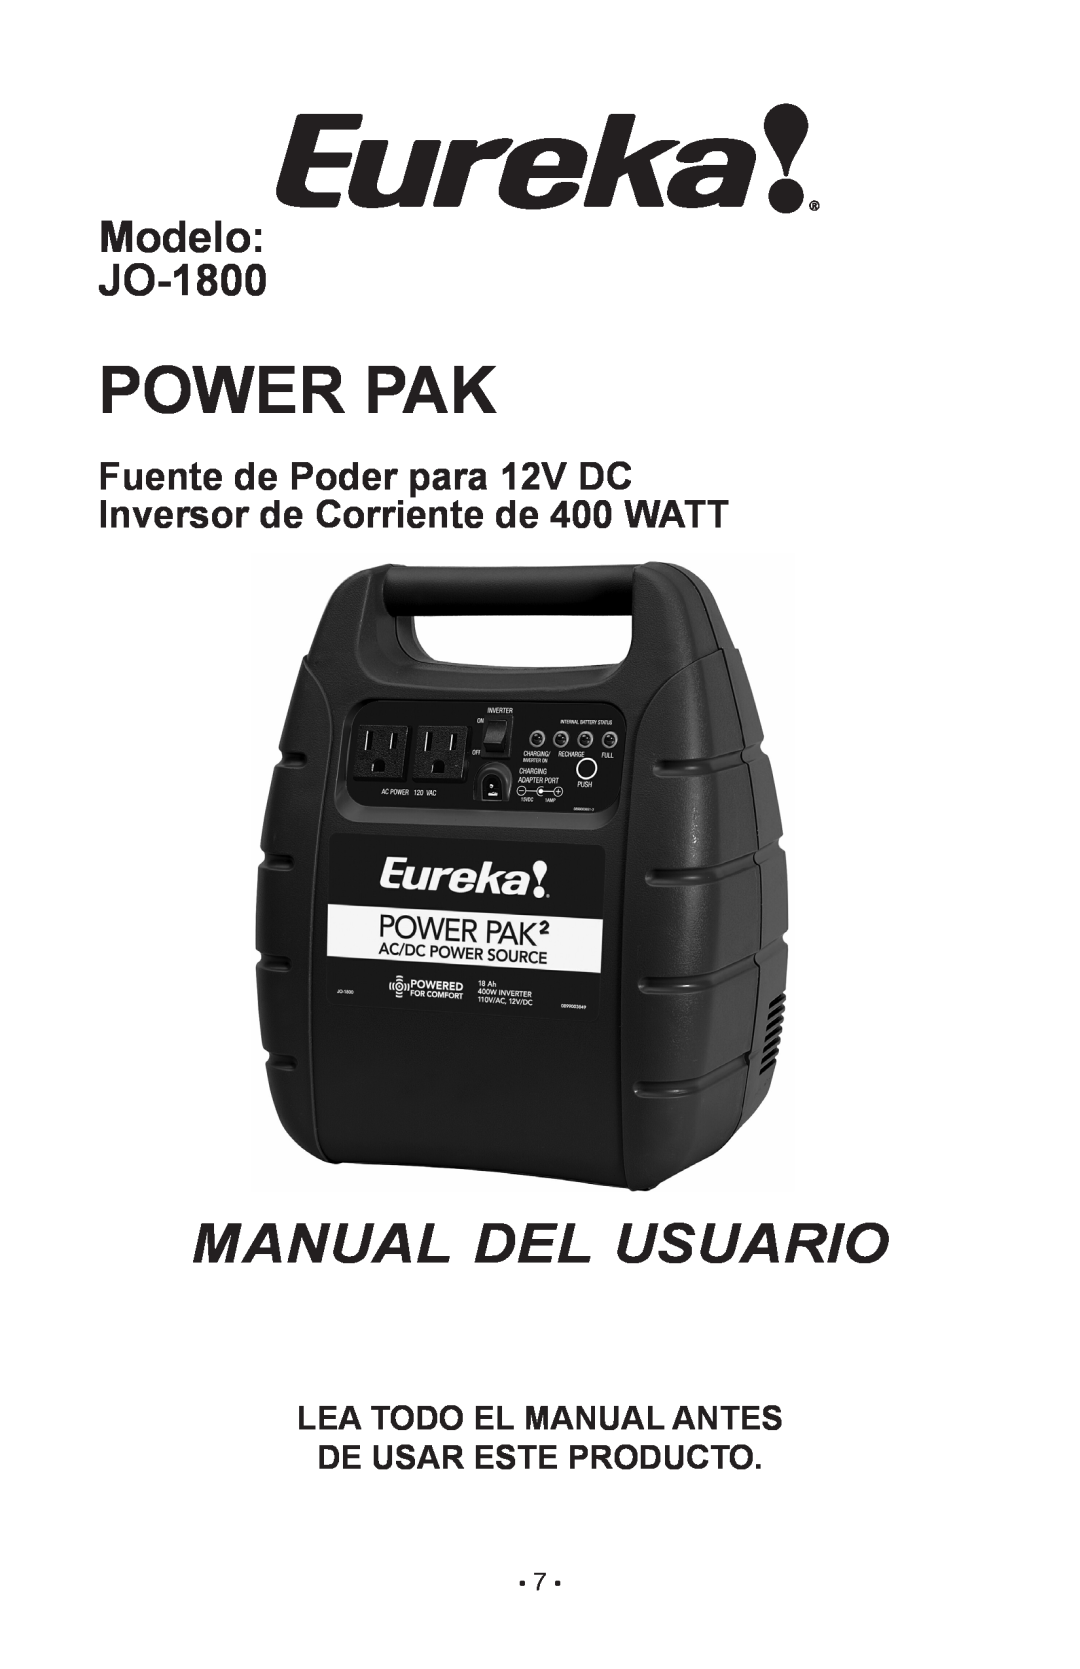 Eureka owner manual MANUAL DEL usuario, Modelo JO-1800, Lea Todo El Manual Antes De Usar Este Producto, Power Pak 